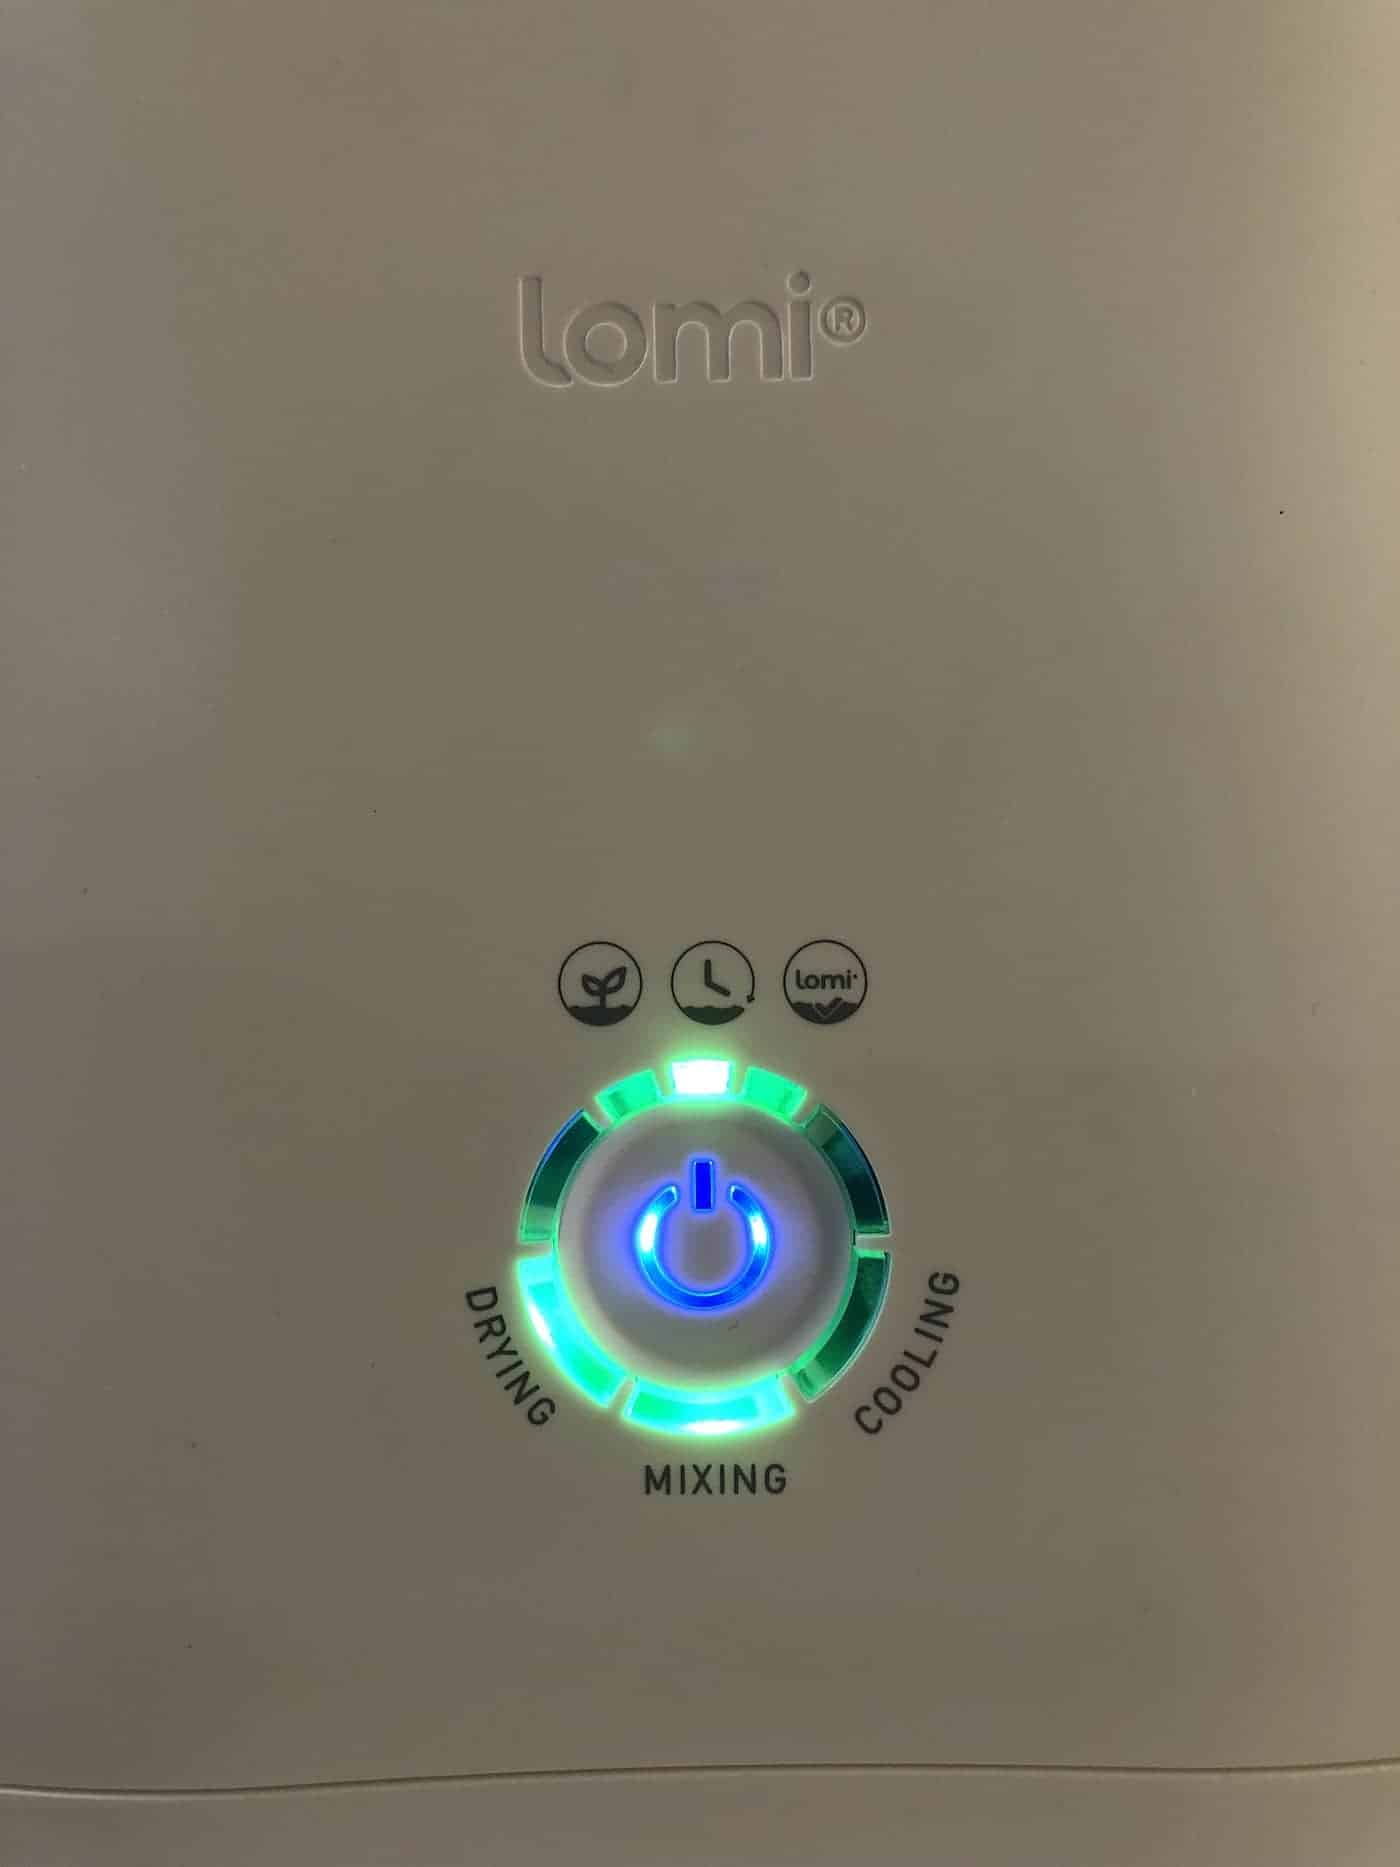 lomi button - set mode